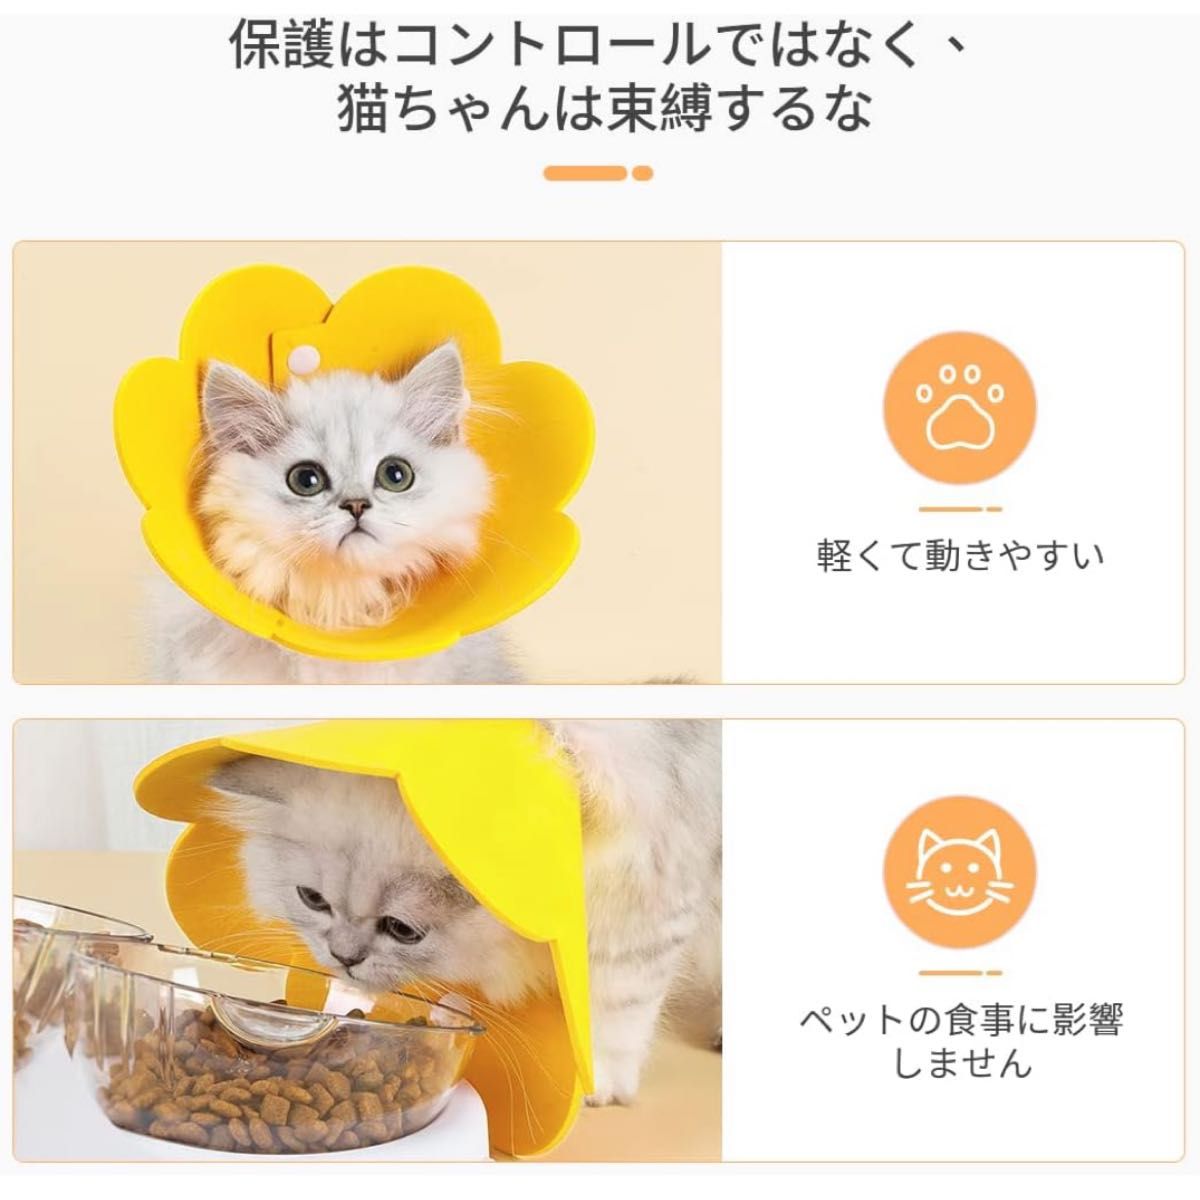 【大特価】エリザベスカラー 2個 イエロー 黄色 S 猫 ペット フェルト ソフト 黄色